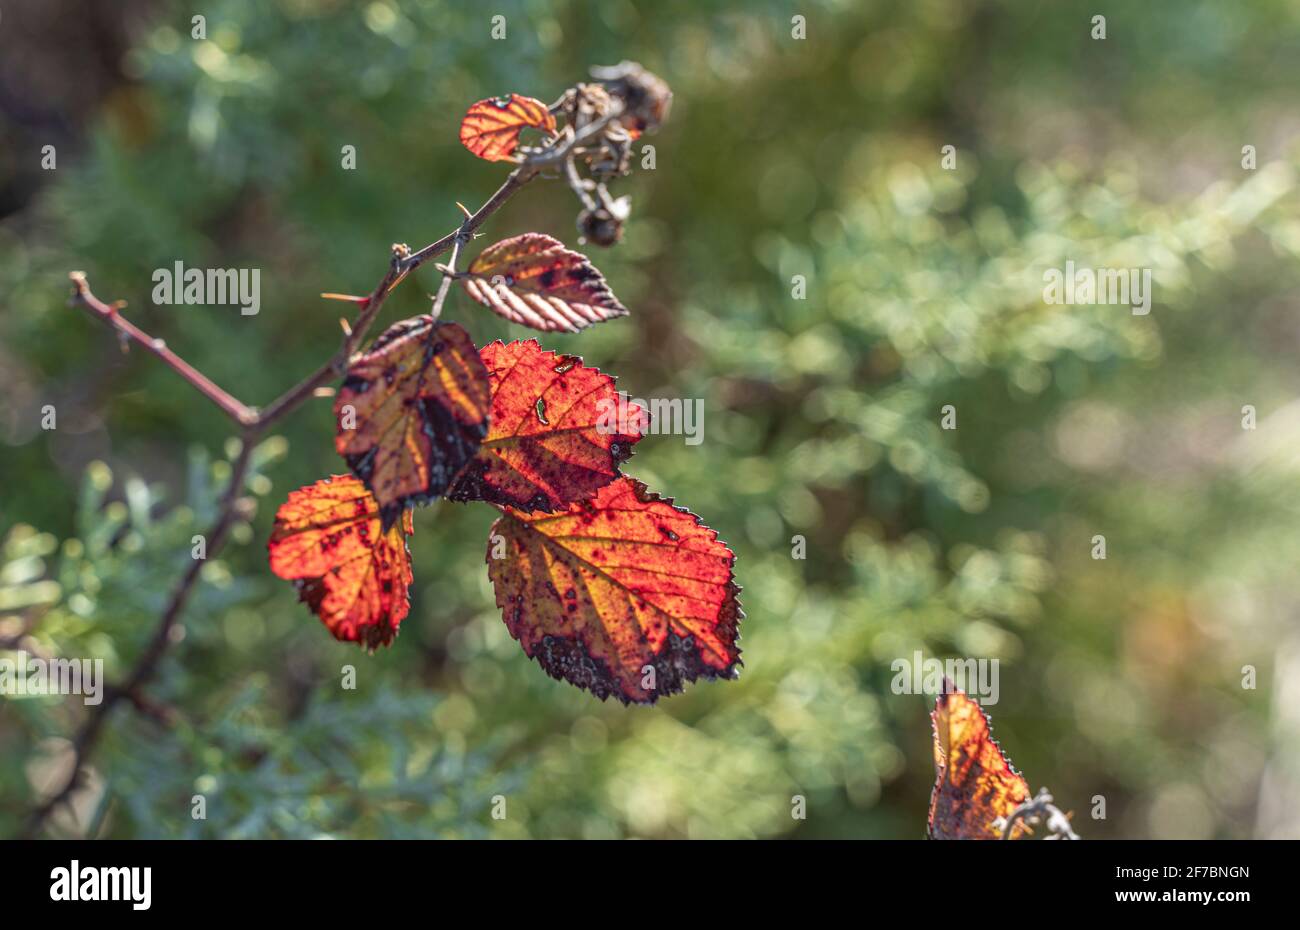 Branche et feuilles de Bramble (Rubus fruticosus), qui devient rouge en automne. Rétroéclairage et vue rapprochée, arrière-plan vert flou. Banque D'Images